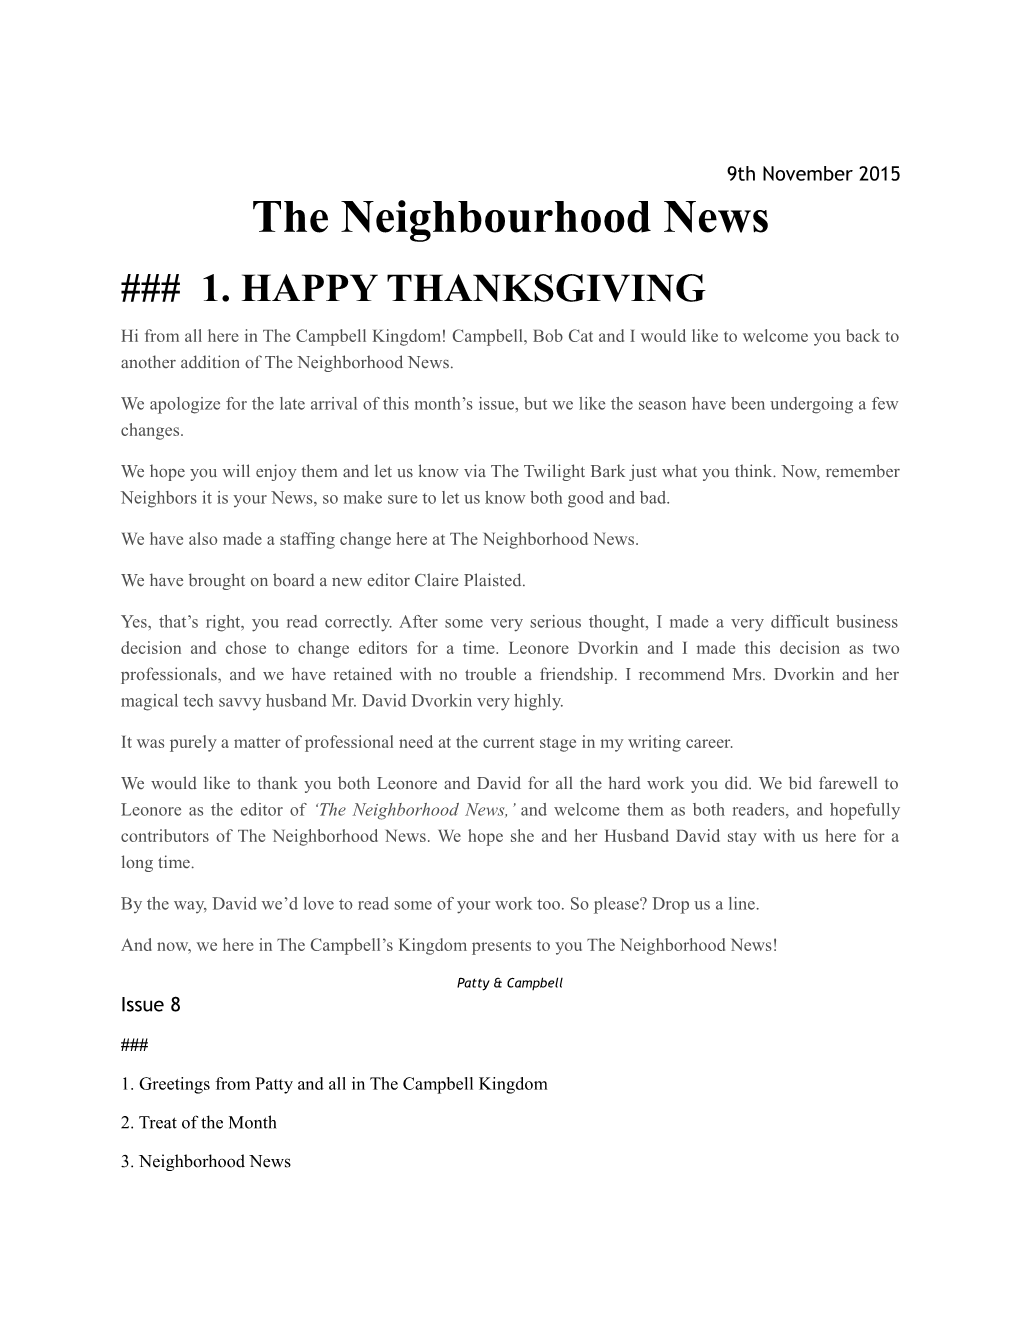 The Neighbourhood News